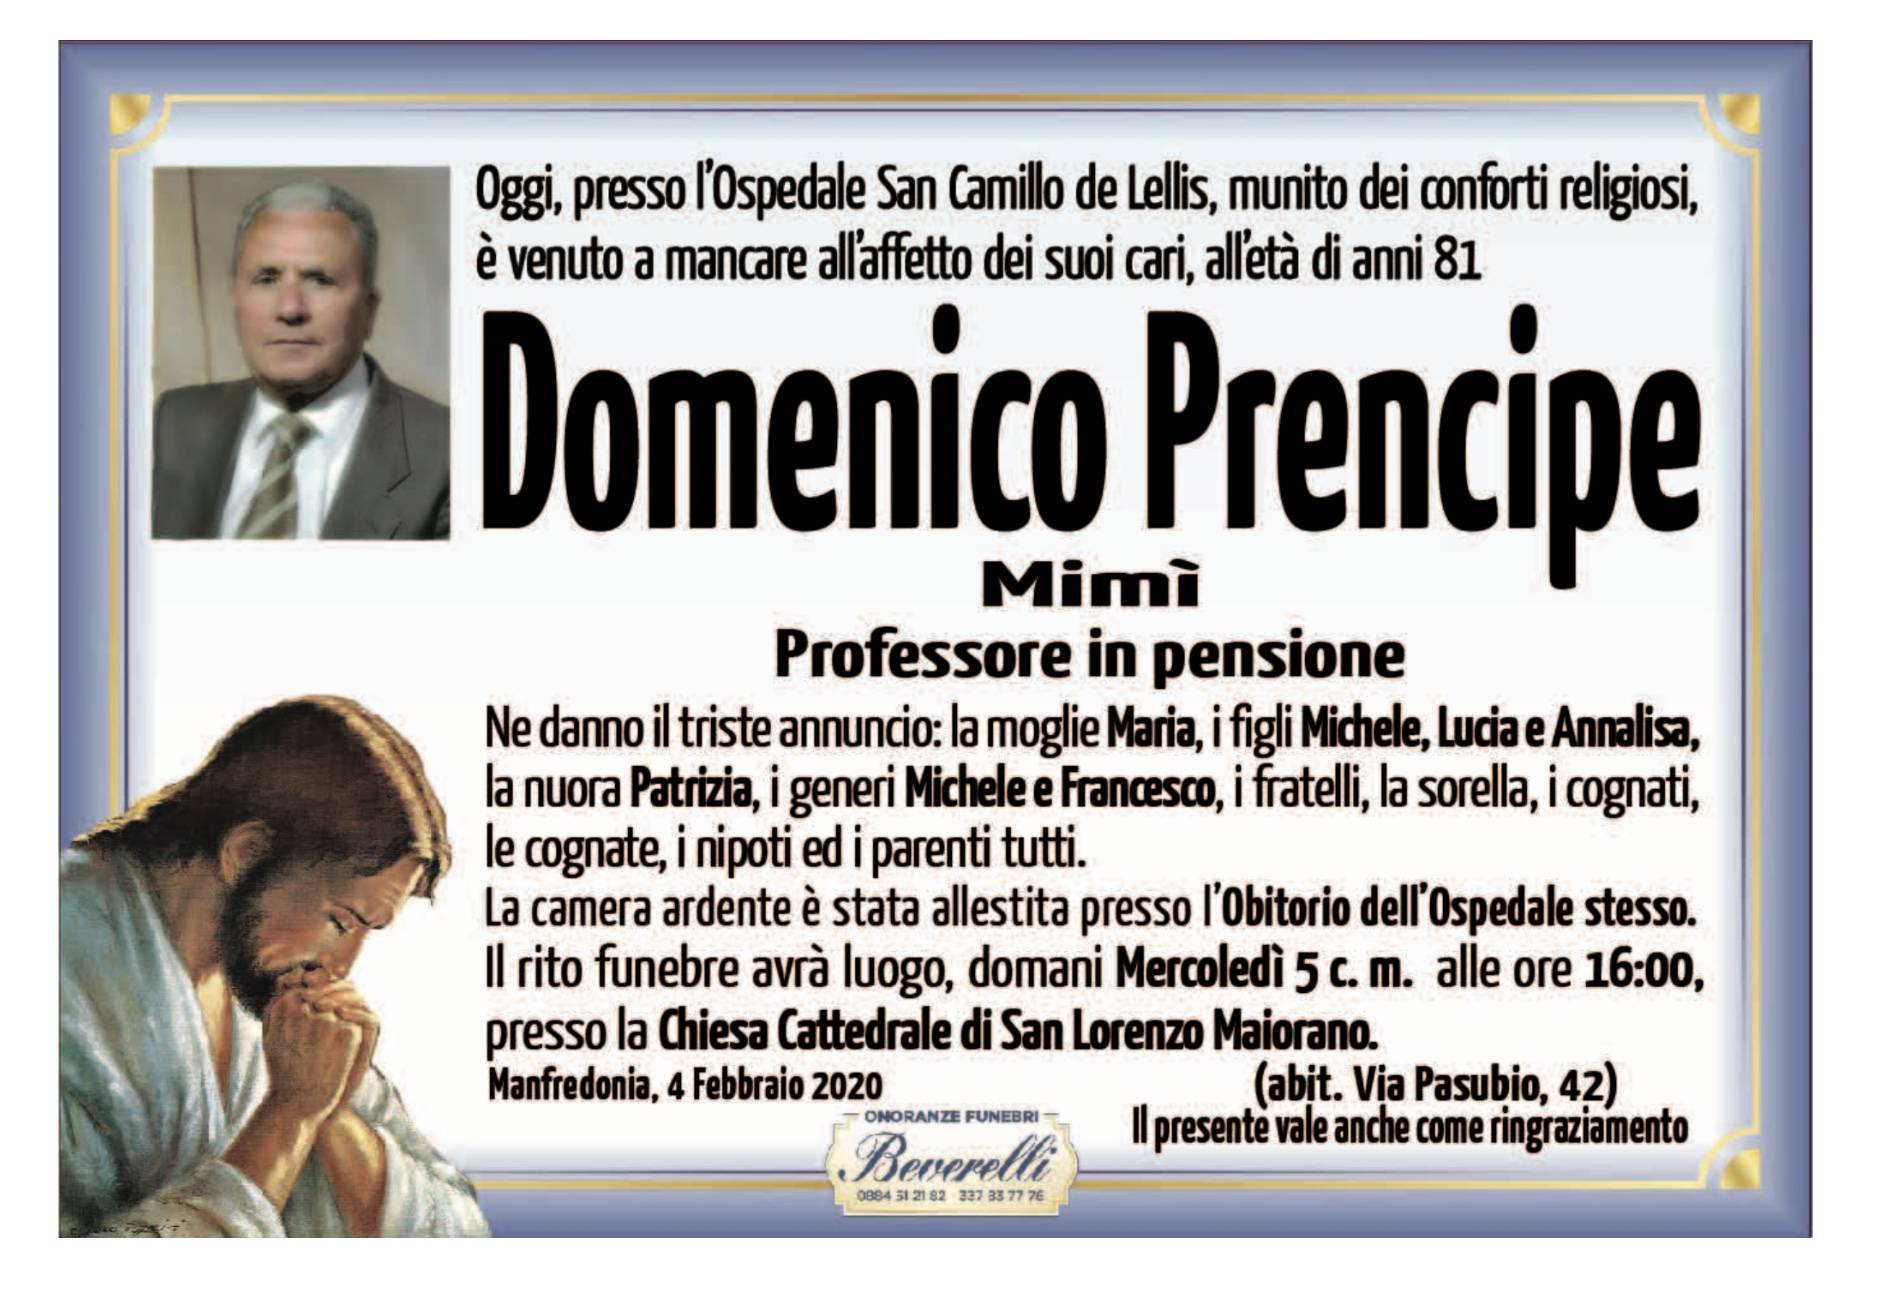 Domenico Prencipe